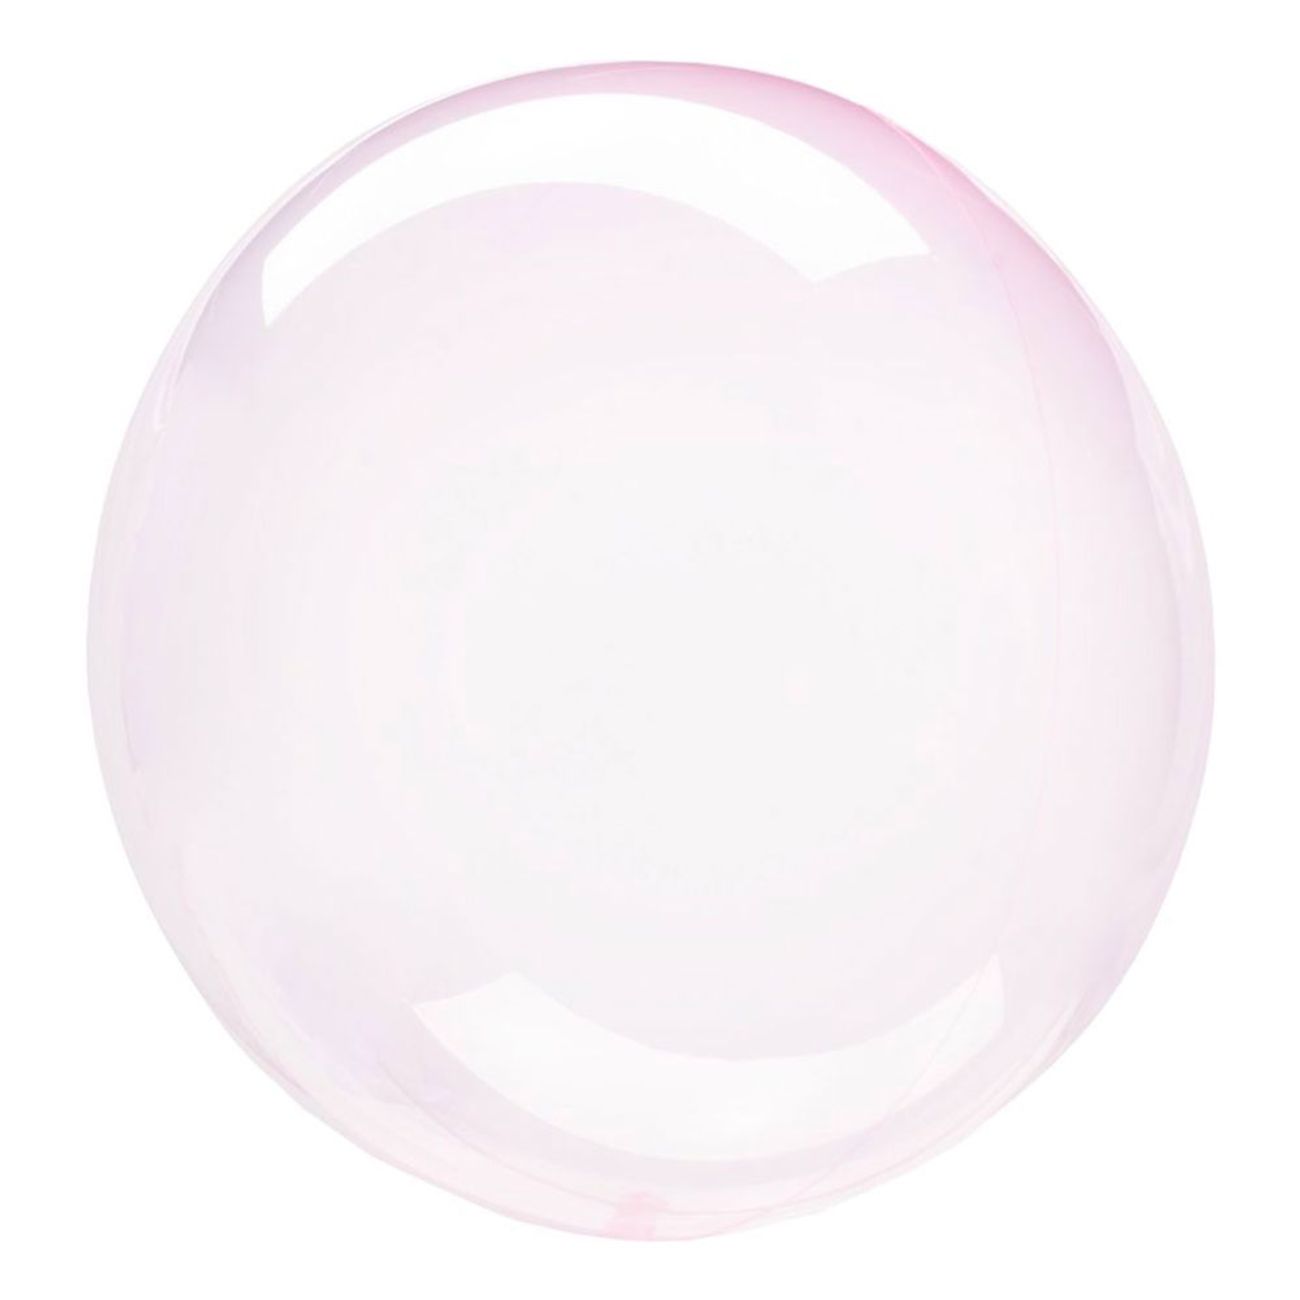 klotballong-ljusrosa-transparent-73096-1